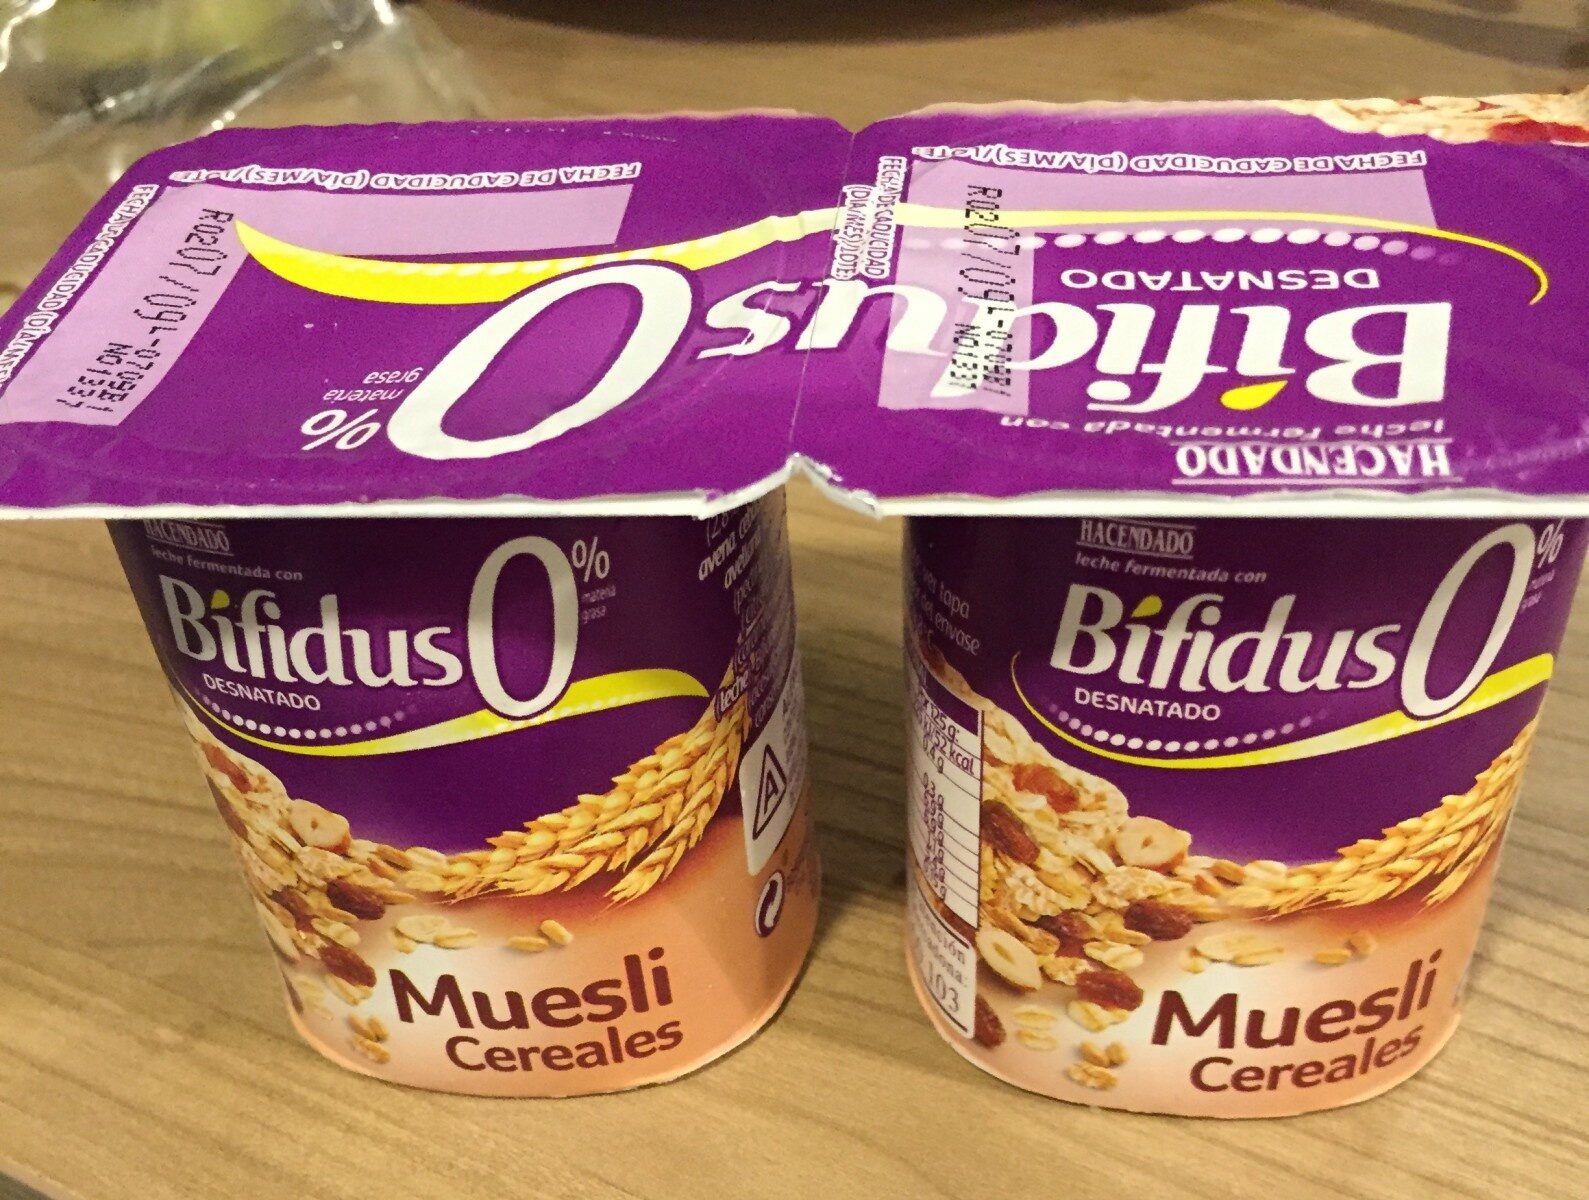 Bifidus 0% muesli cereales - Product - es